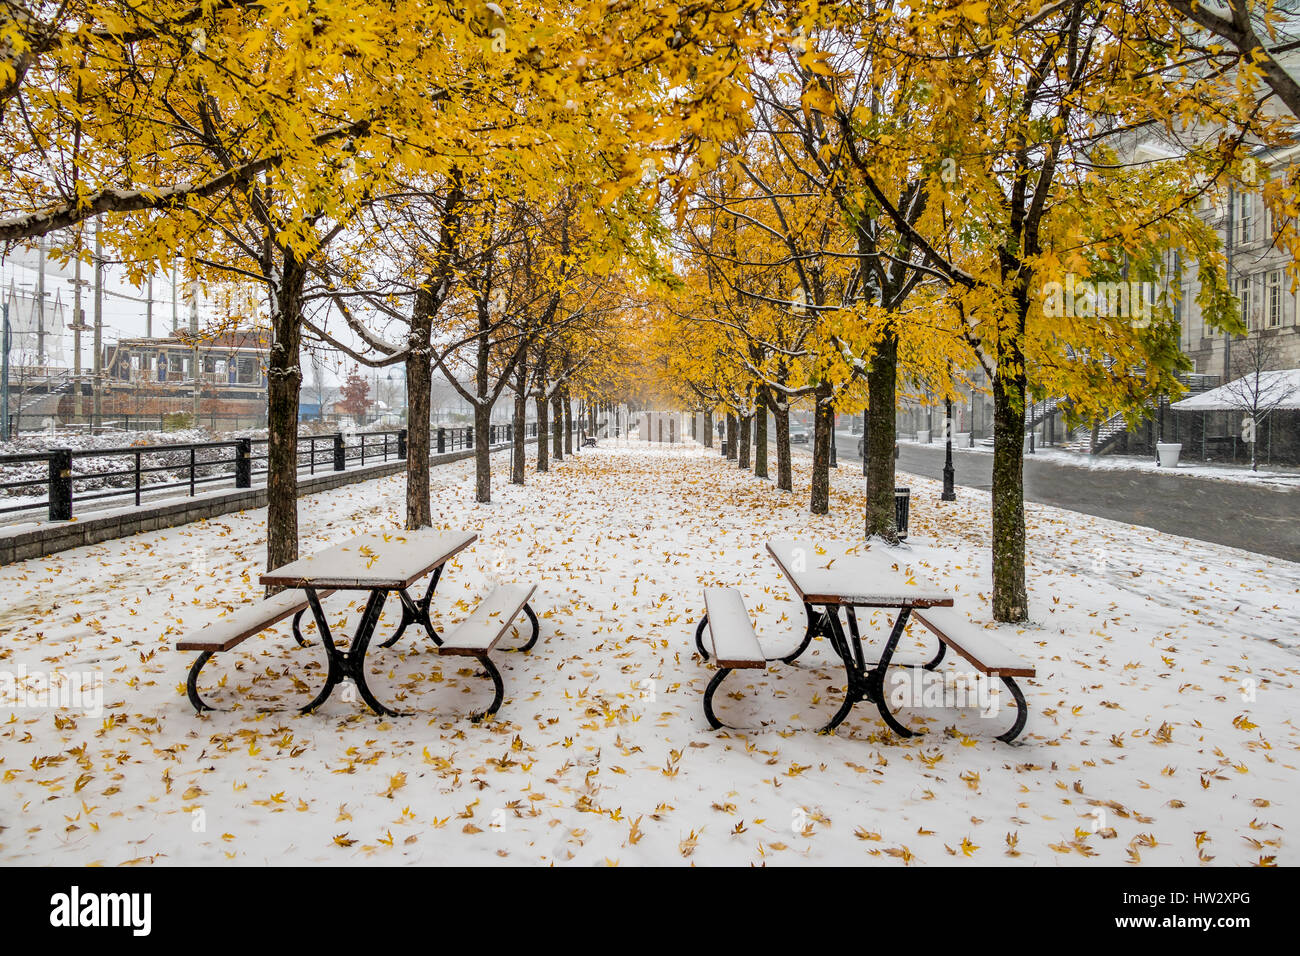 Passerelle sur la première neige avec des feuilles jaunes tombant des arbres - Montréal, Québec, Canada Banque D'Images